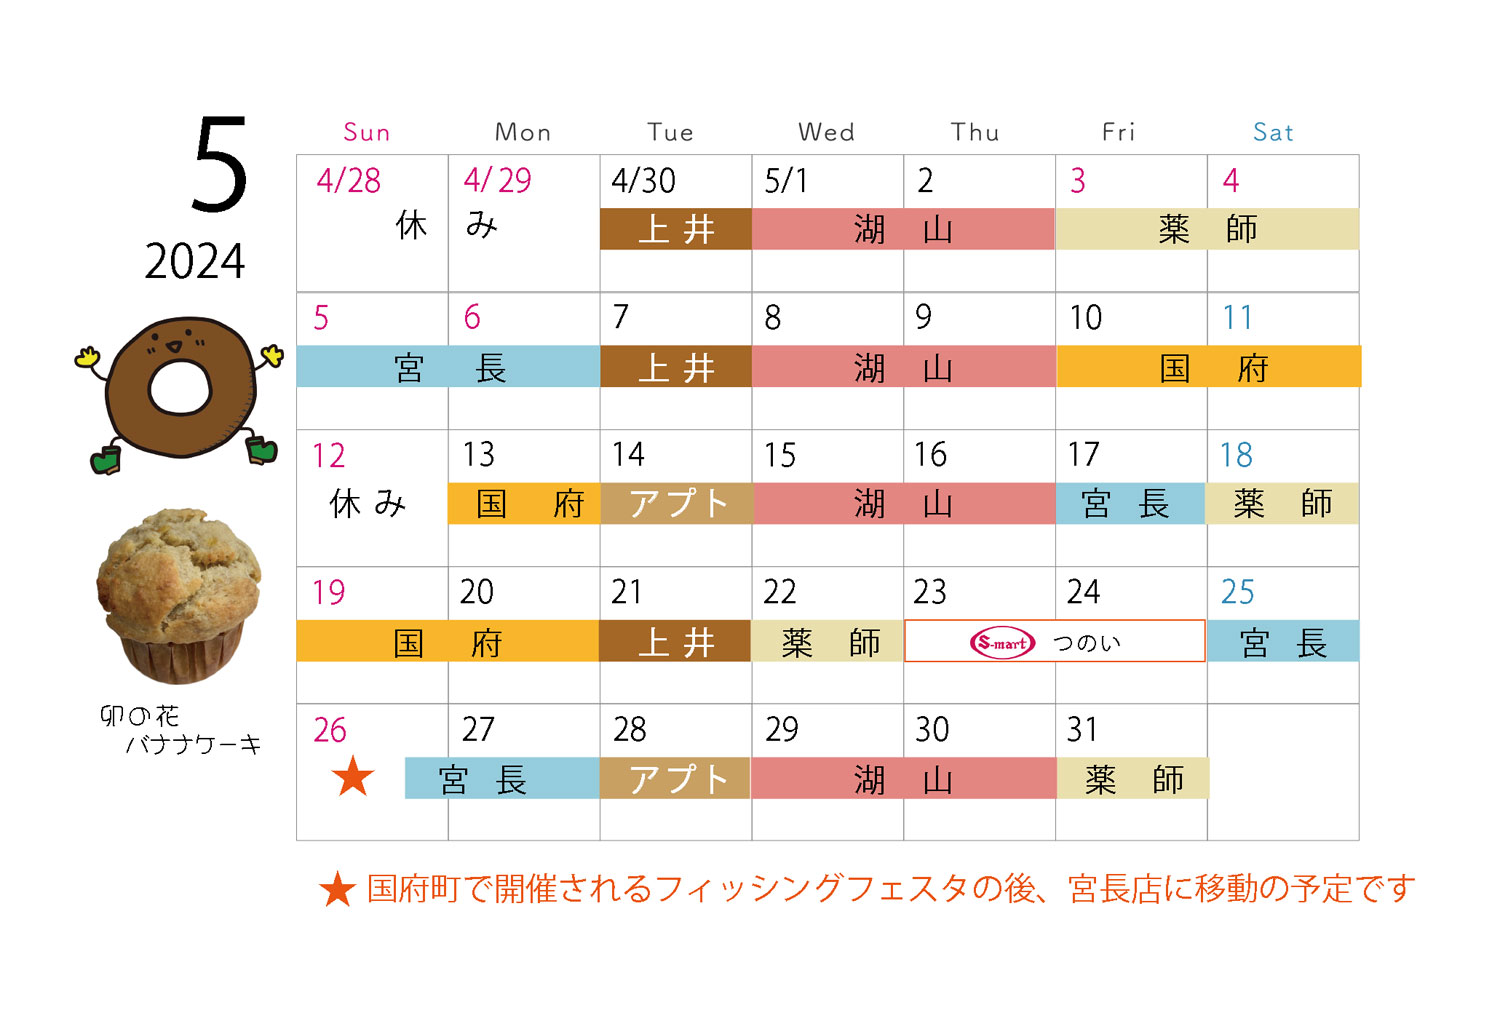 キッチンカーカレンダー